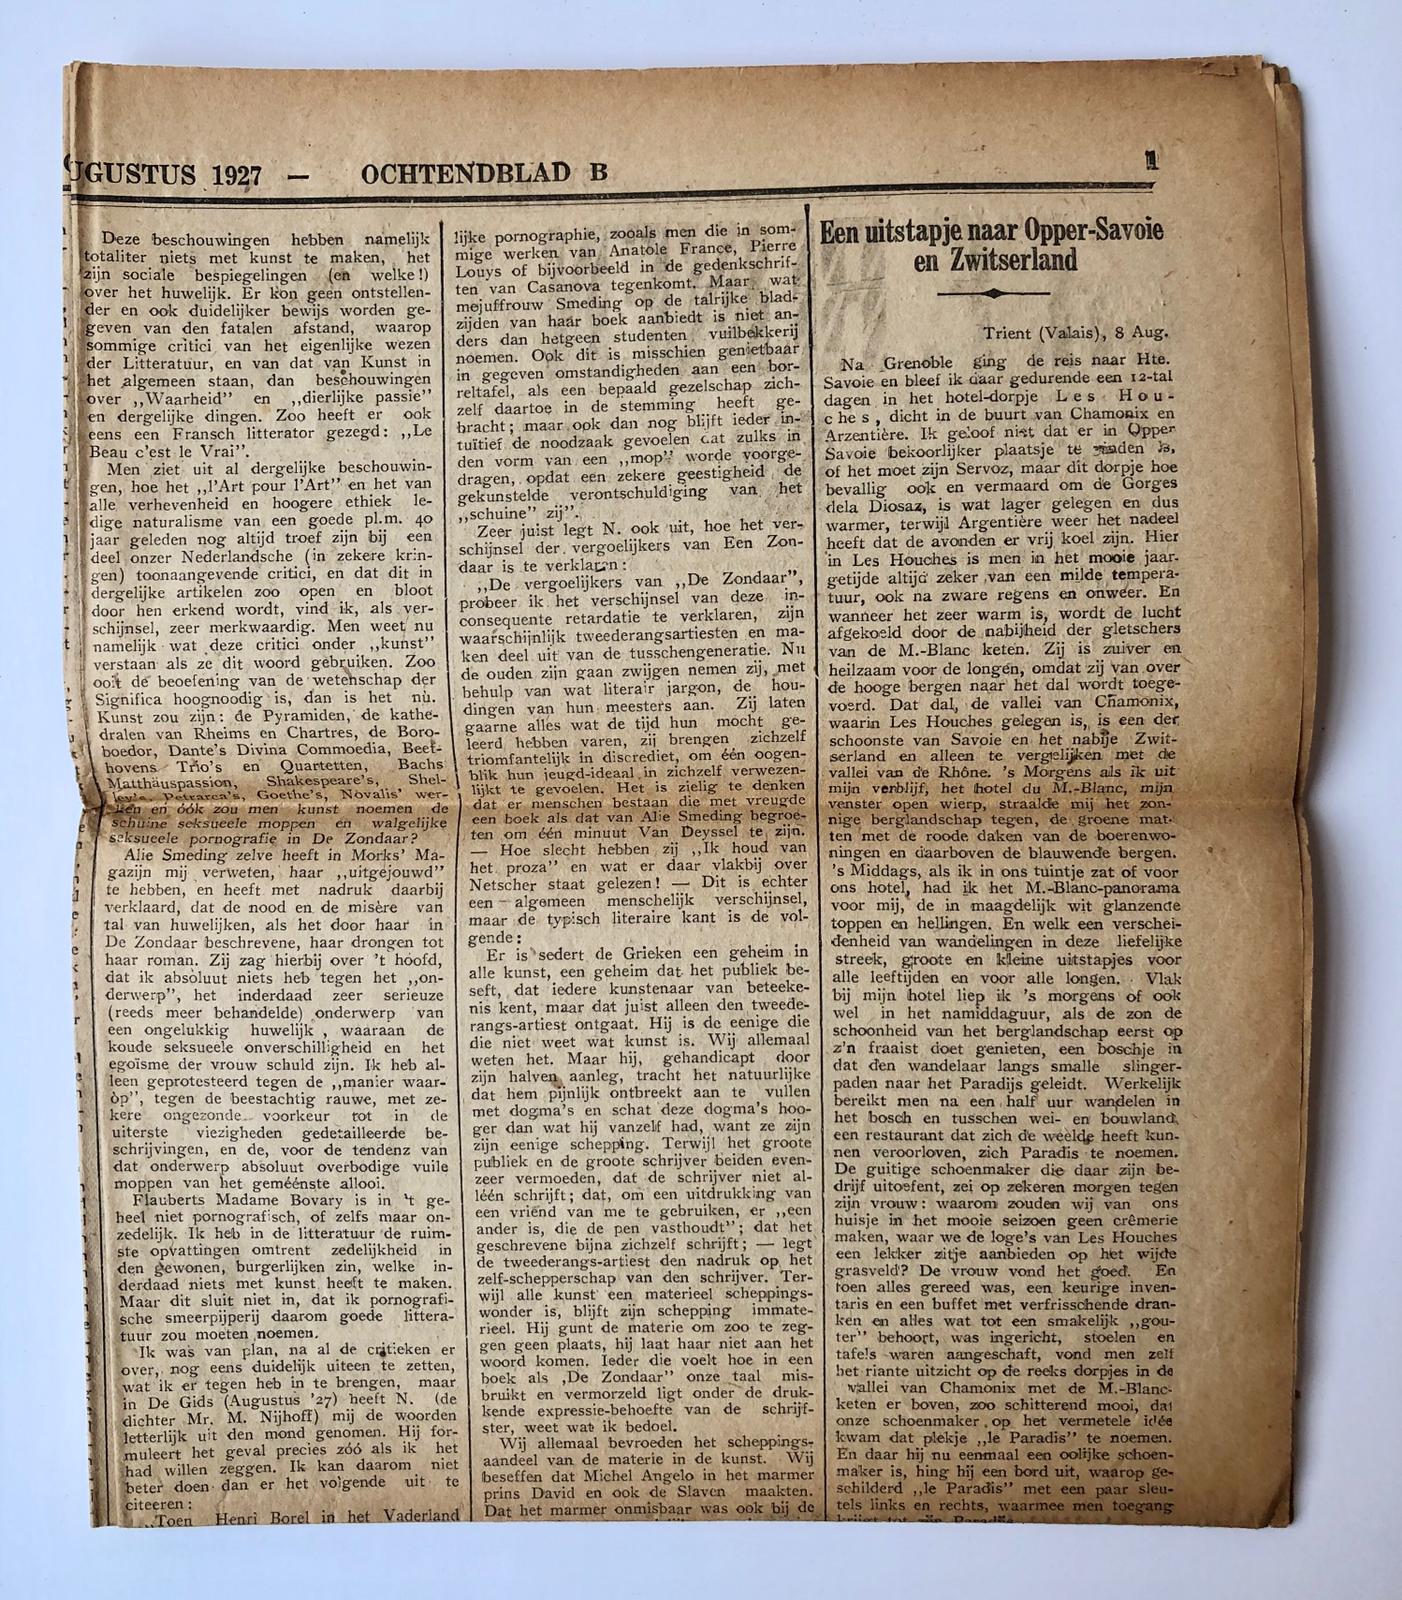  - [Newspaper articles, BR VON HEMMERSWEIL] Vier krantenartikelen Rust een weinig uit Het Vaderland van 1926-1927, ondertekenen J.J.M. Volgens aantekening geschreven door Br von Hemmersweil.